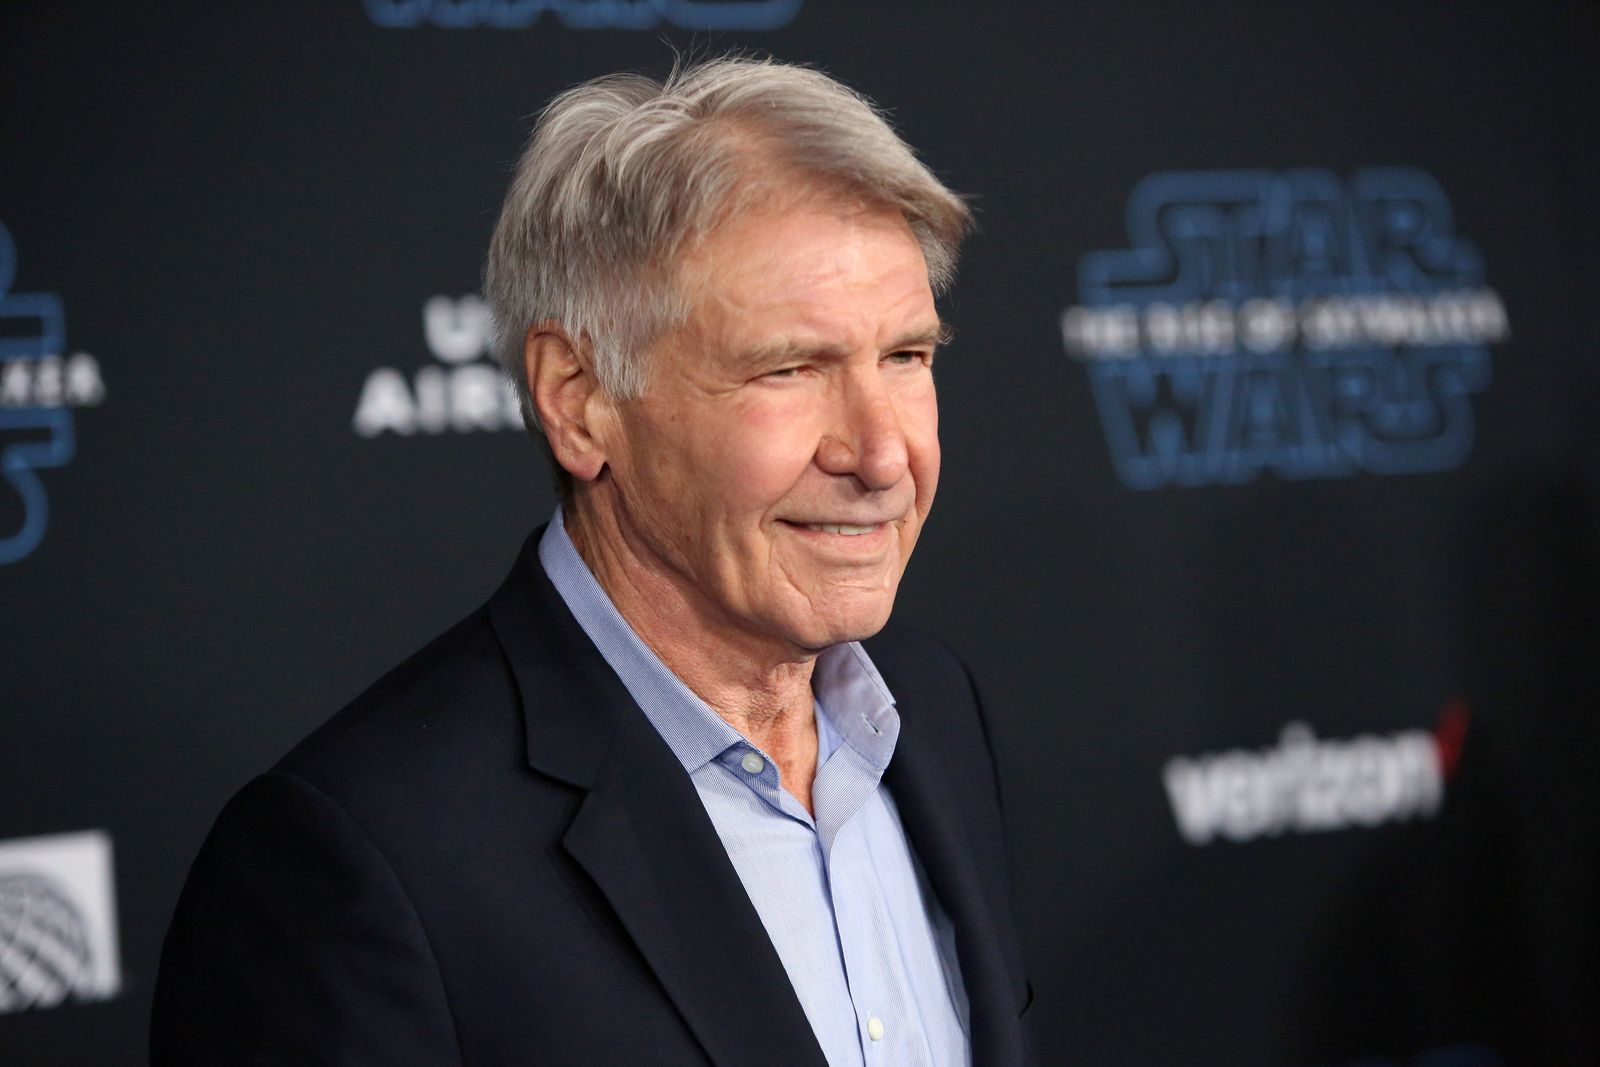 Harrison Ford en el estreno mundial de "Star Wars: Episodio IX" el 16 de diciembre de 2019 en Hollywood, California | Foto: Getty Images